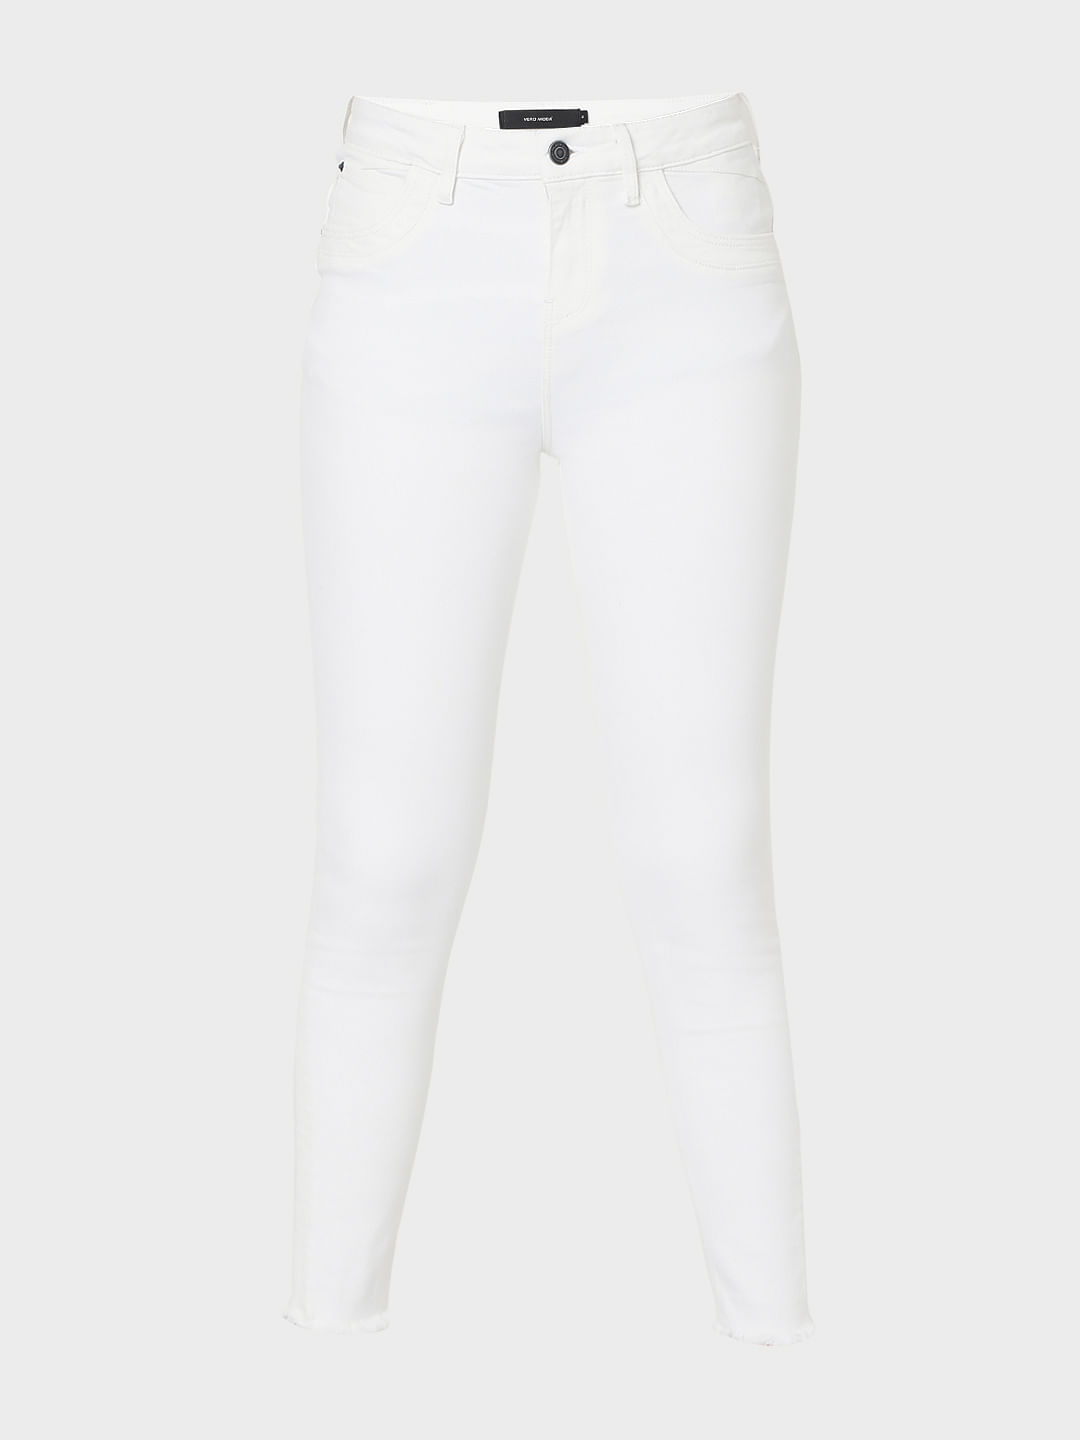 Plain Skinny Fit White Side Dori Denim Jeans For Women